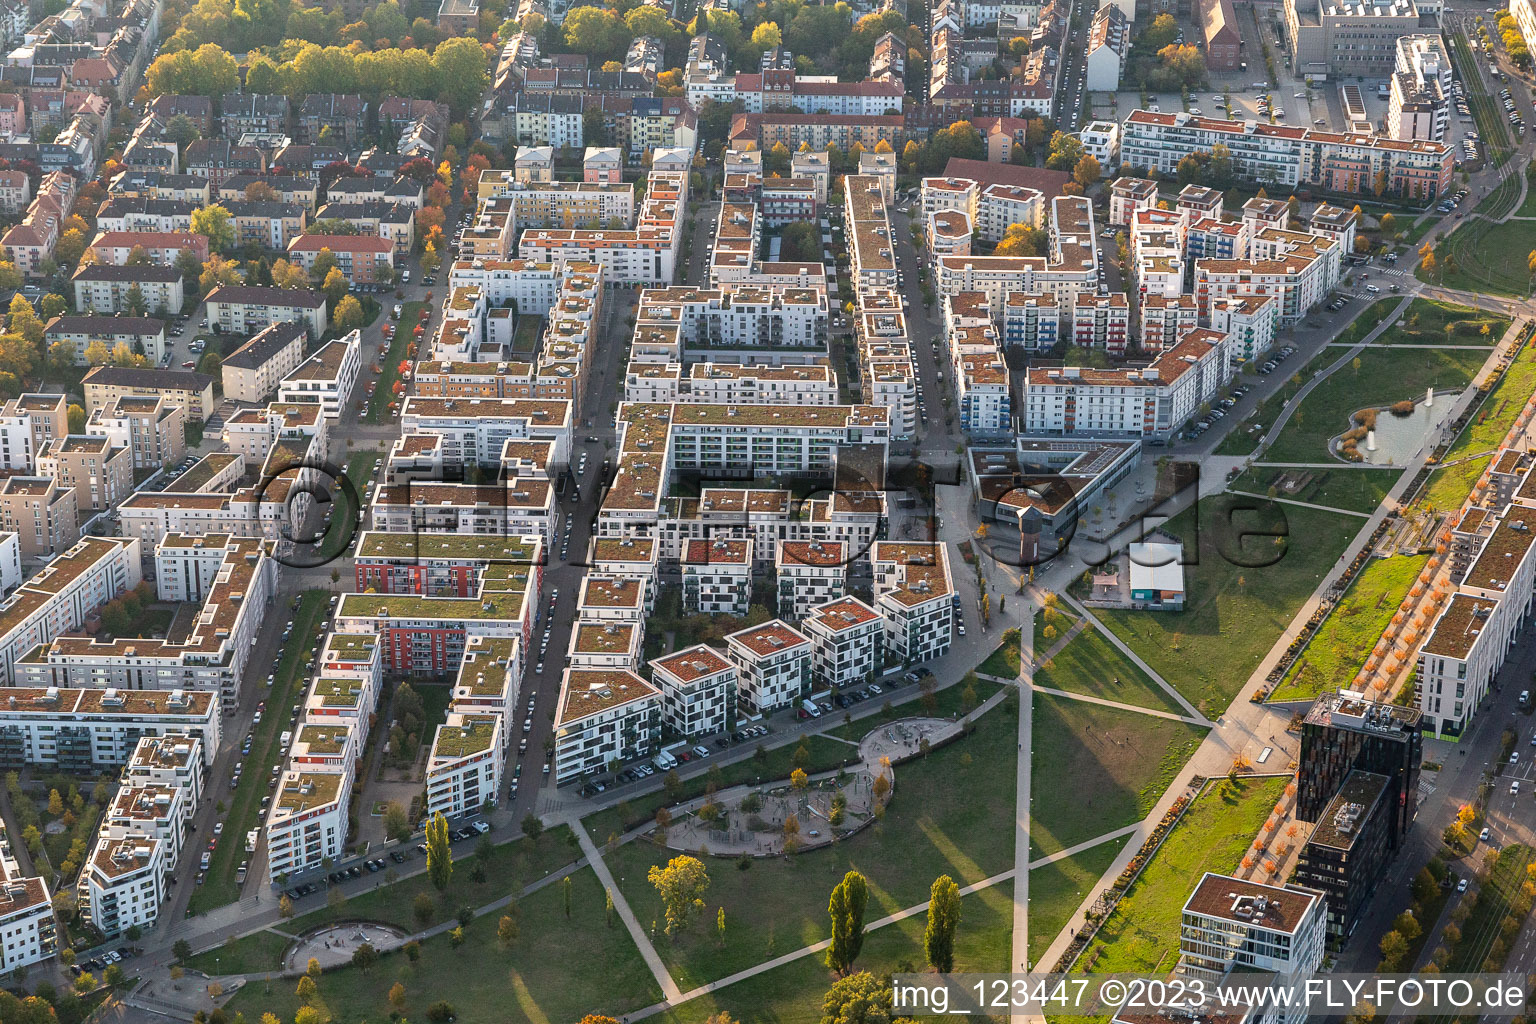 Flächen und Immobilien mit moderner Wohnbebauung am Citypark (Stadtpark Südost) an der Ludwig Erhard Allee in Karlsruhe im Ortsteil Südstadt im Bundesland Baden-Württemberg, Deutschland